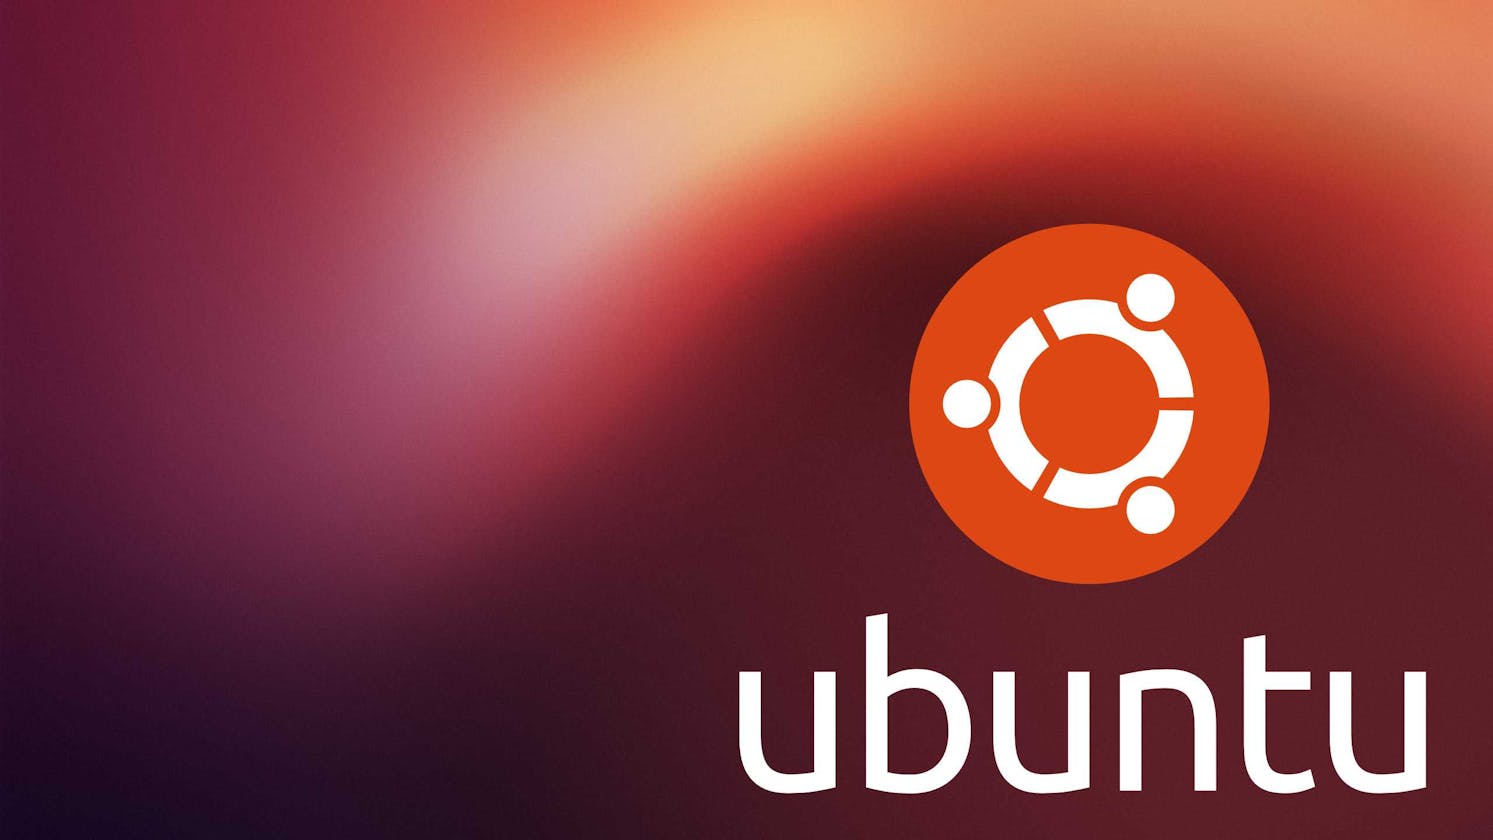 Install Ubuntu using VirtualBox